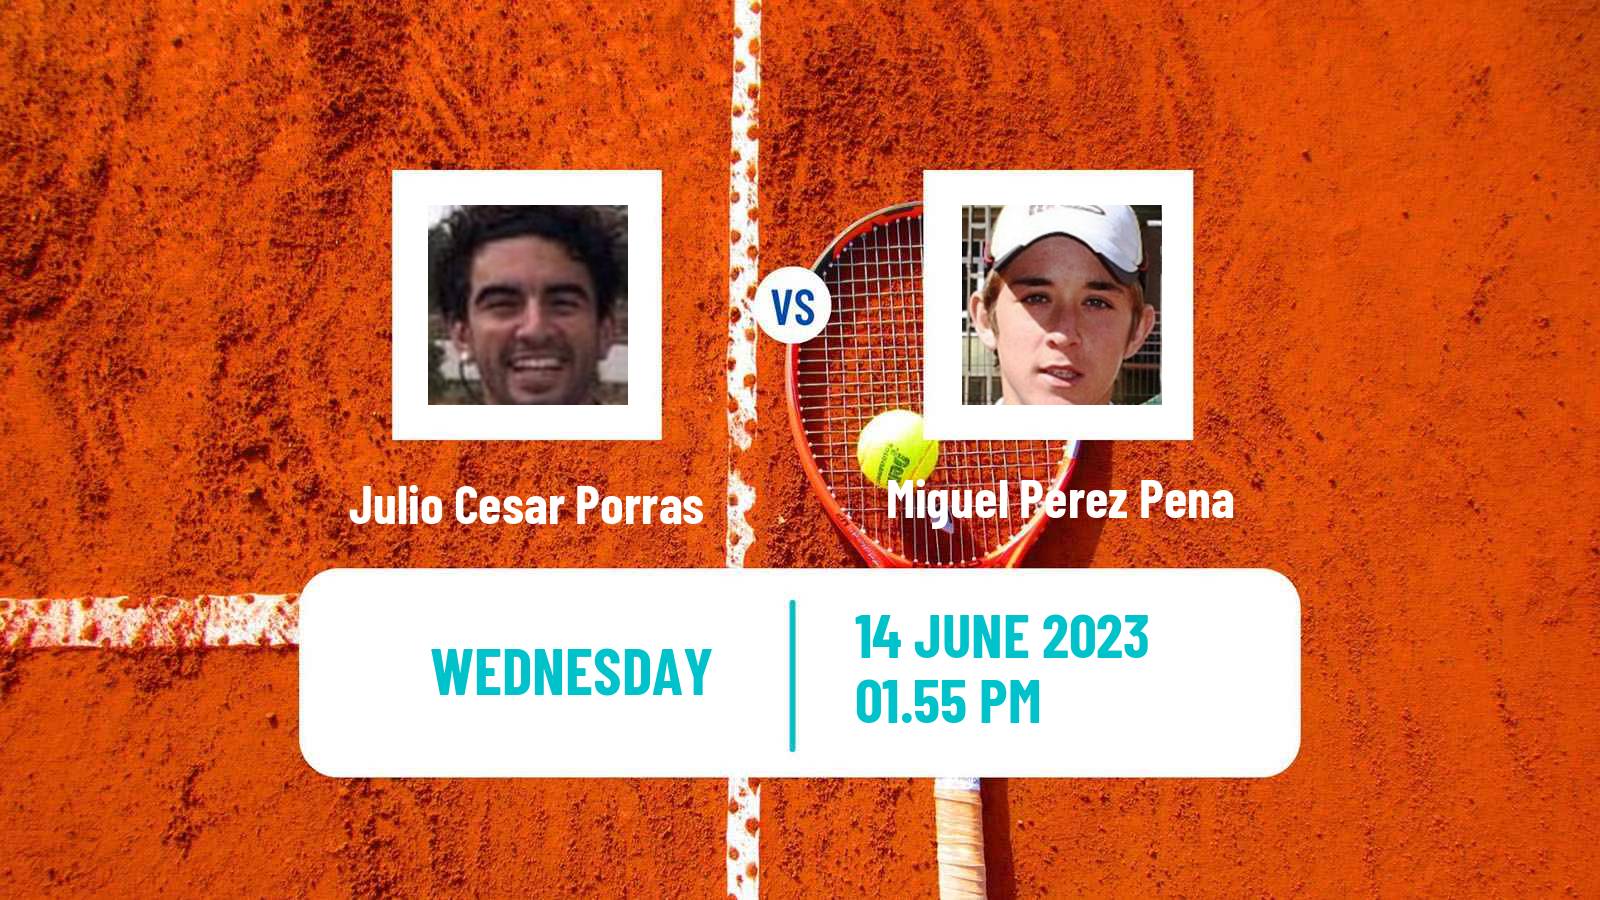 Tennis ITF M25 Martos Men Julio Cesar Porras - Miguel Perez Pena